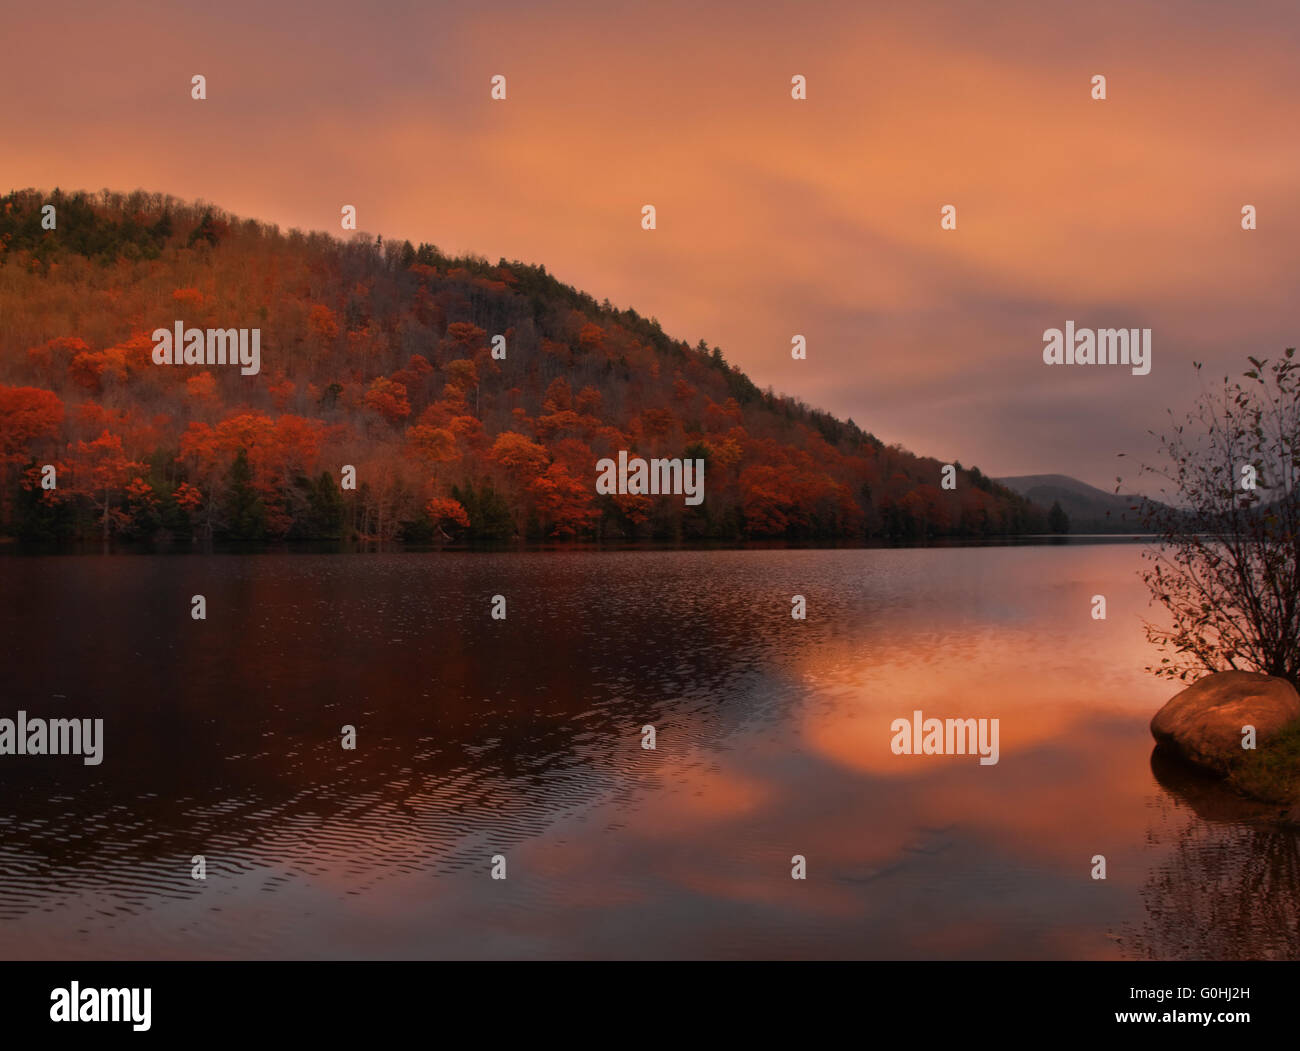 Oxbow Lake in the Adirondack Mountains at sundown Stock Photo